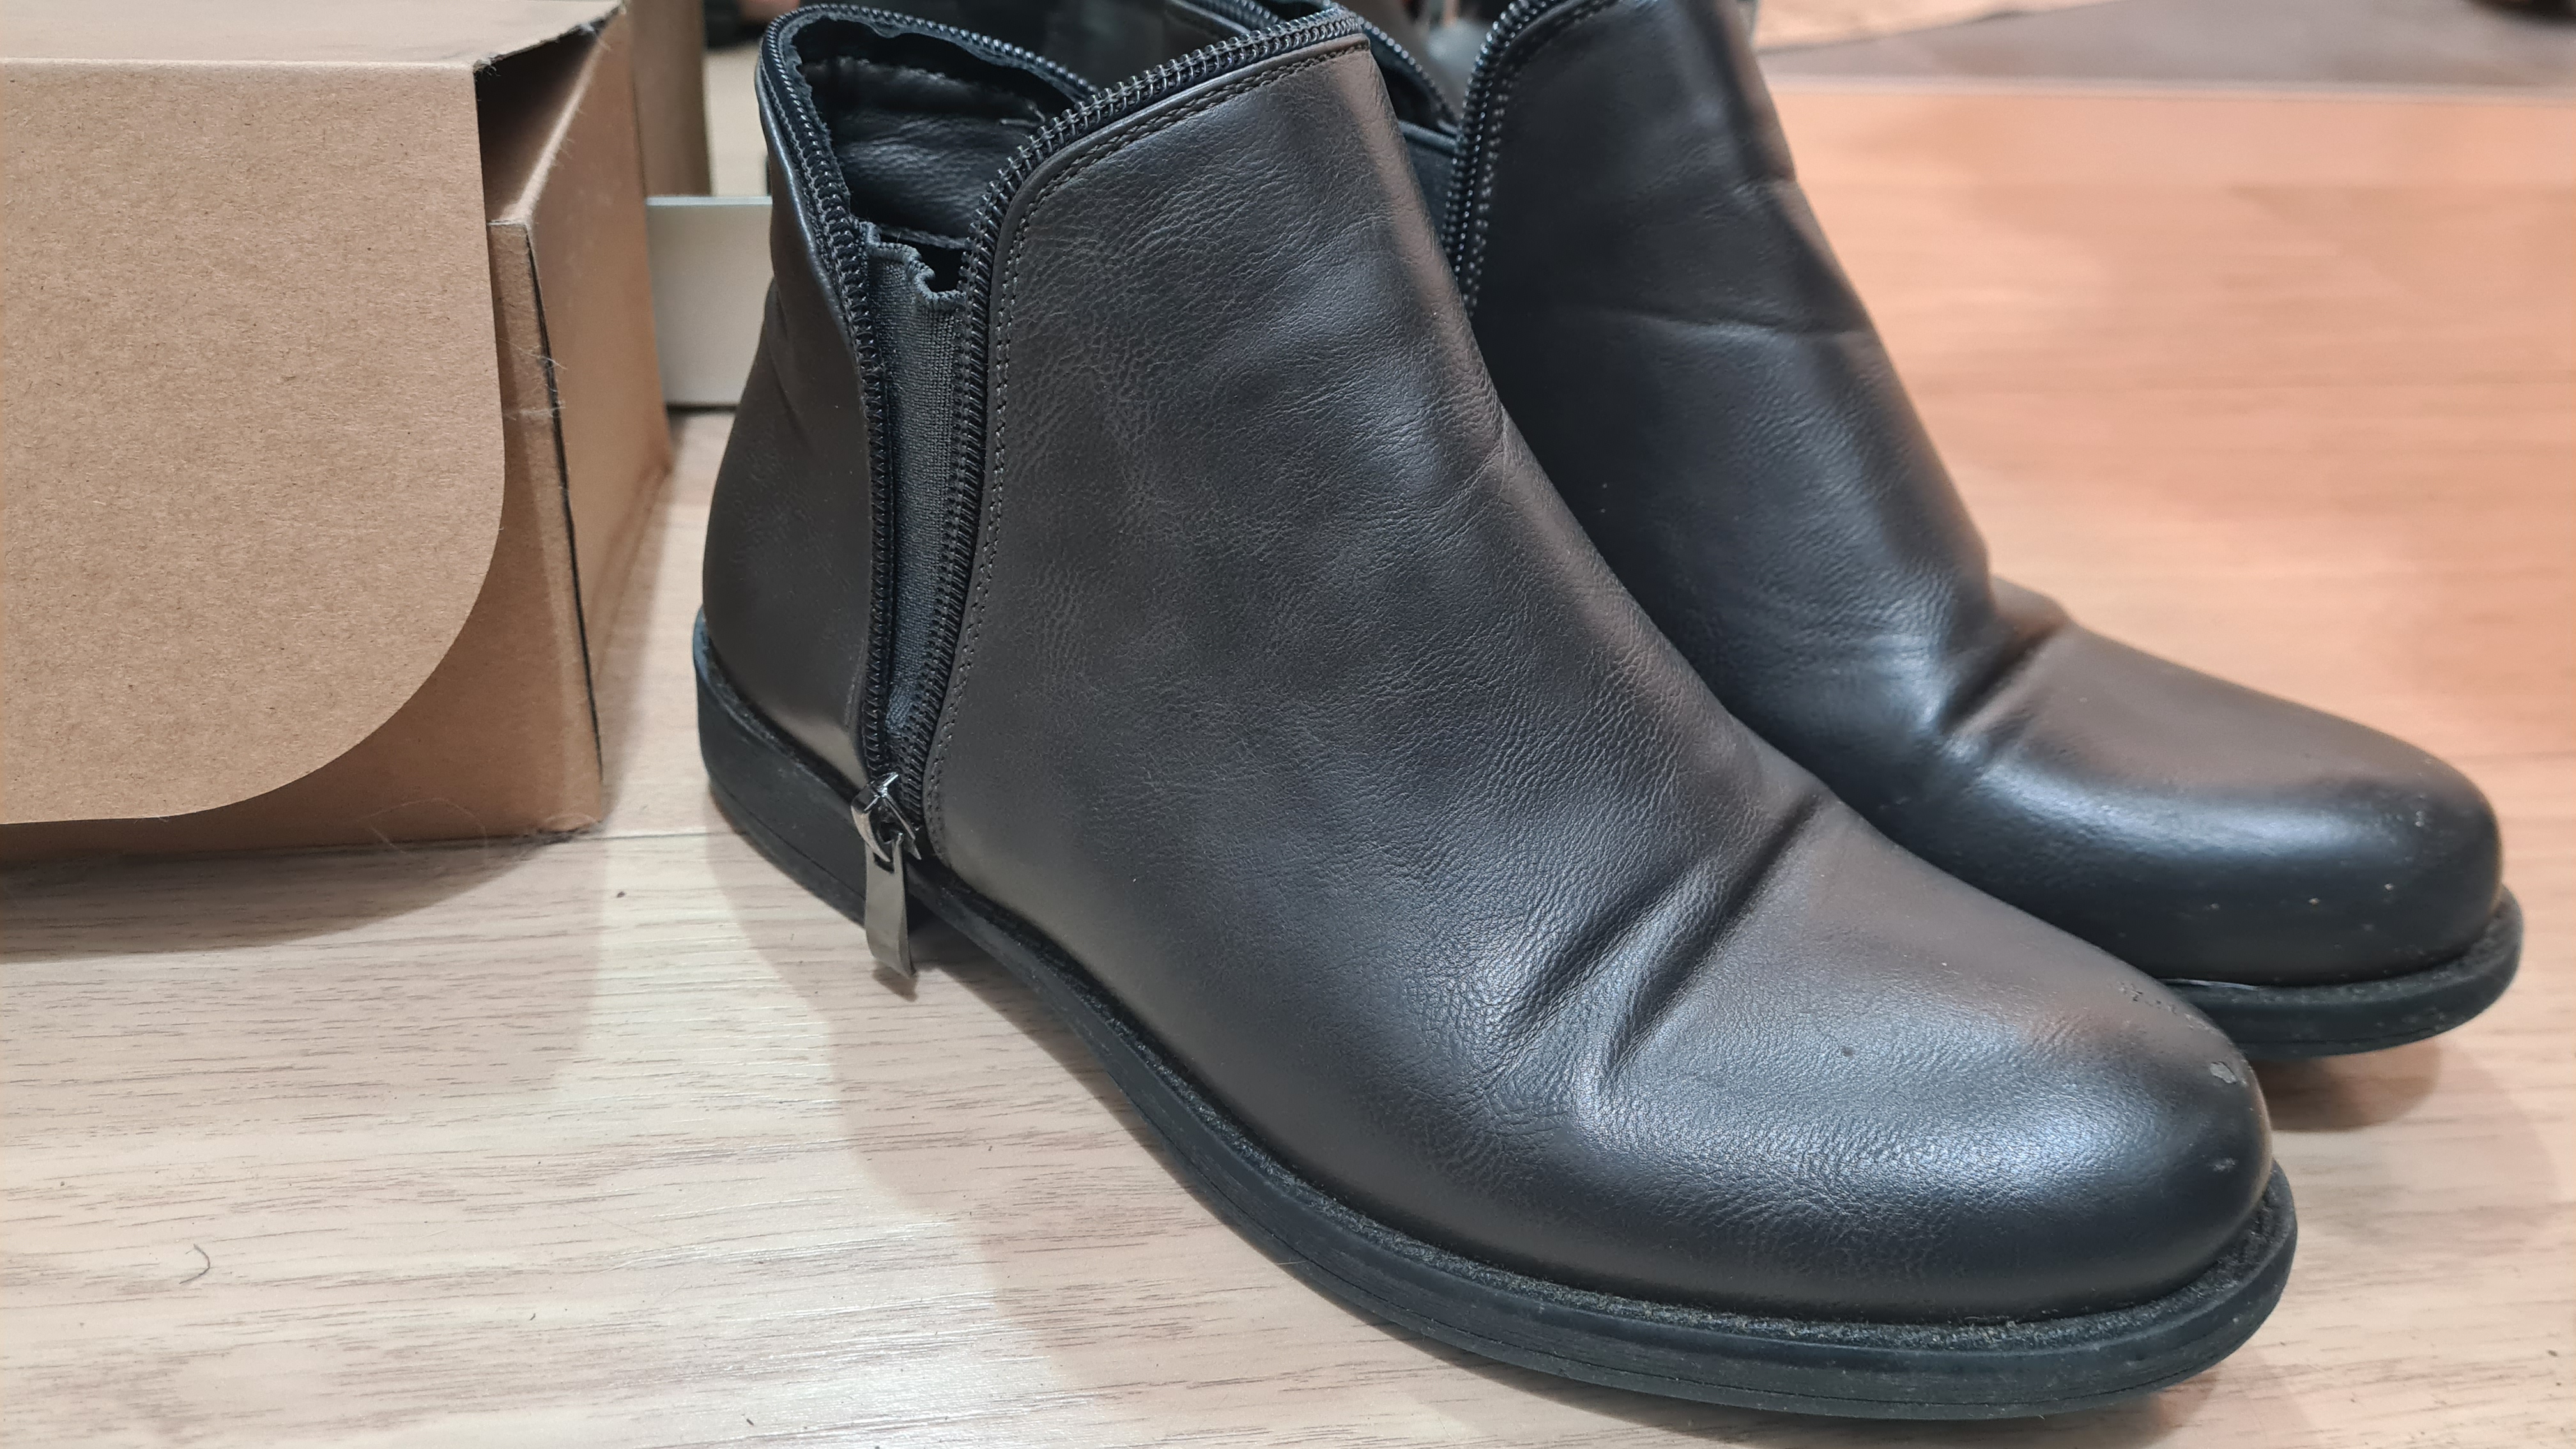 תמונה 5 ,נעליים למכירה בתל אביב יד-שניה לנשים  שונות